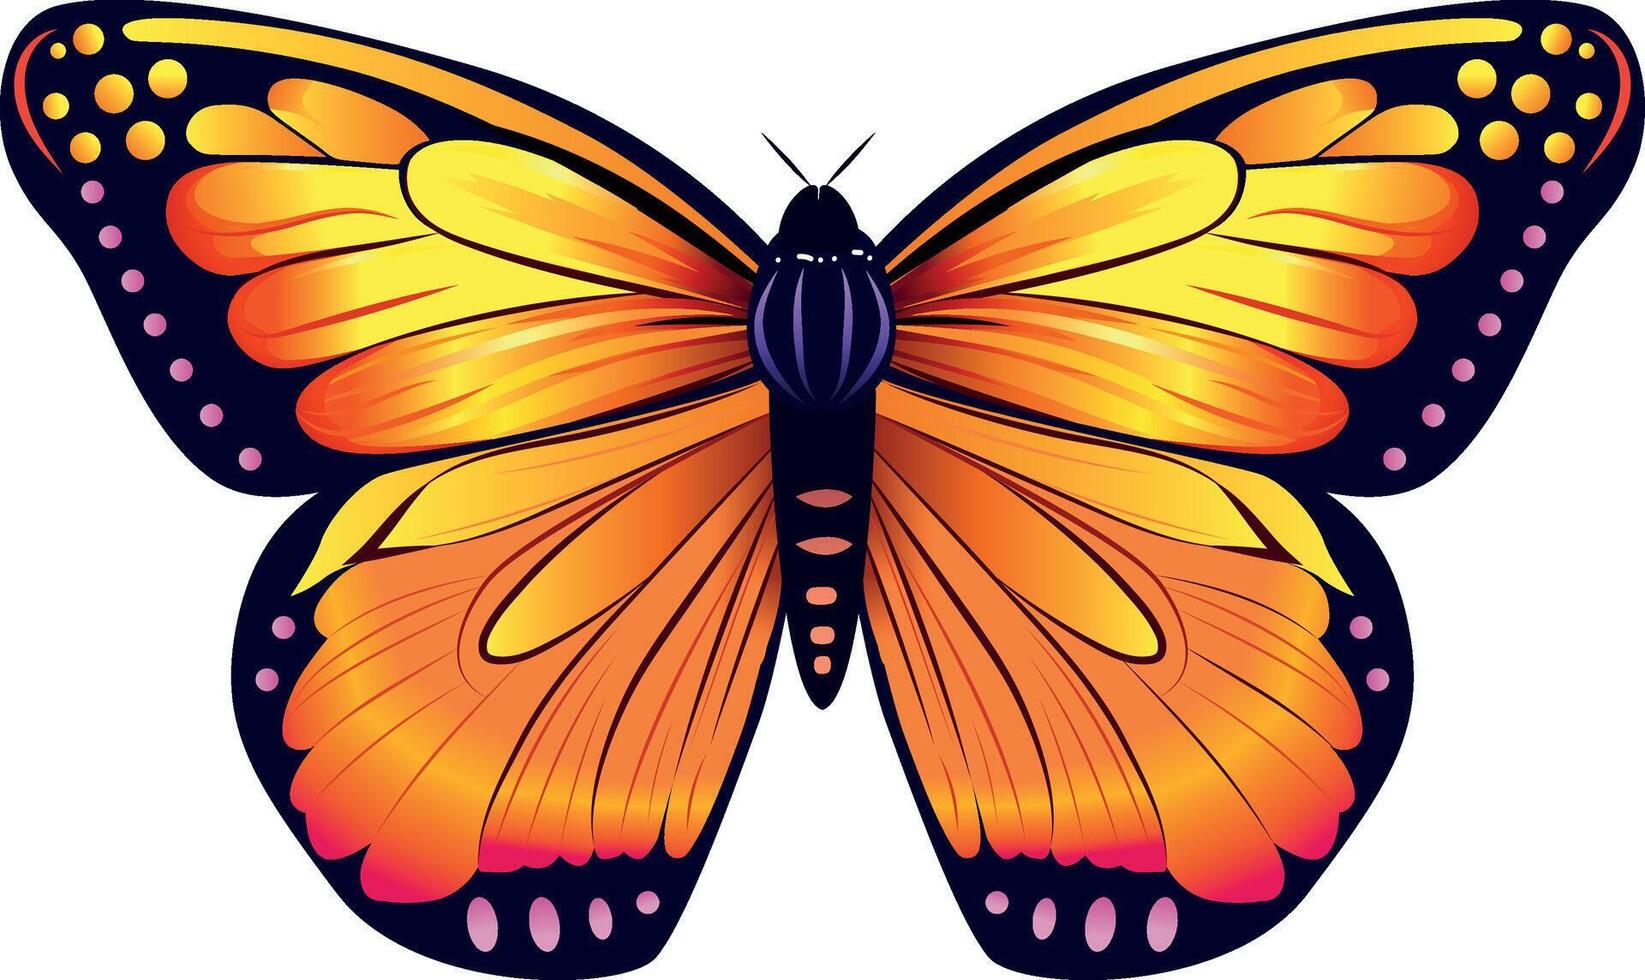 oranje vlinder realistisch vector illustratie.